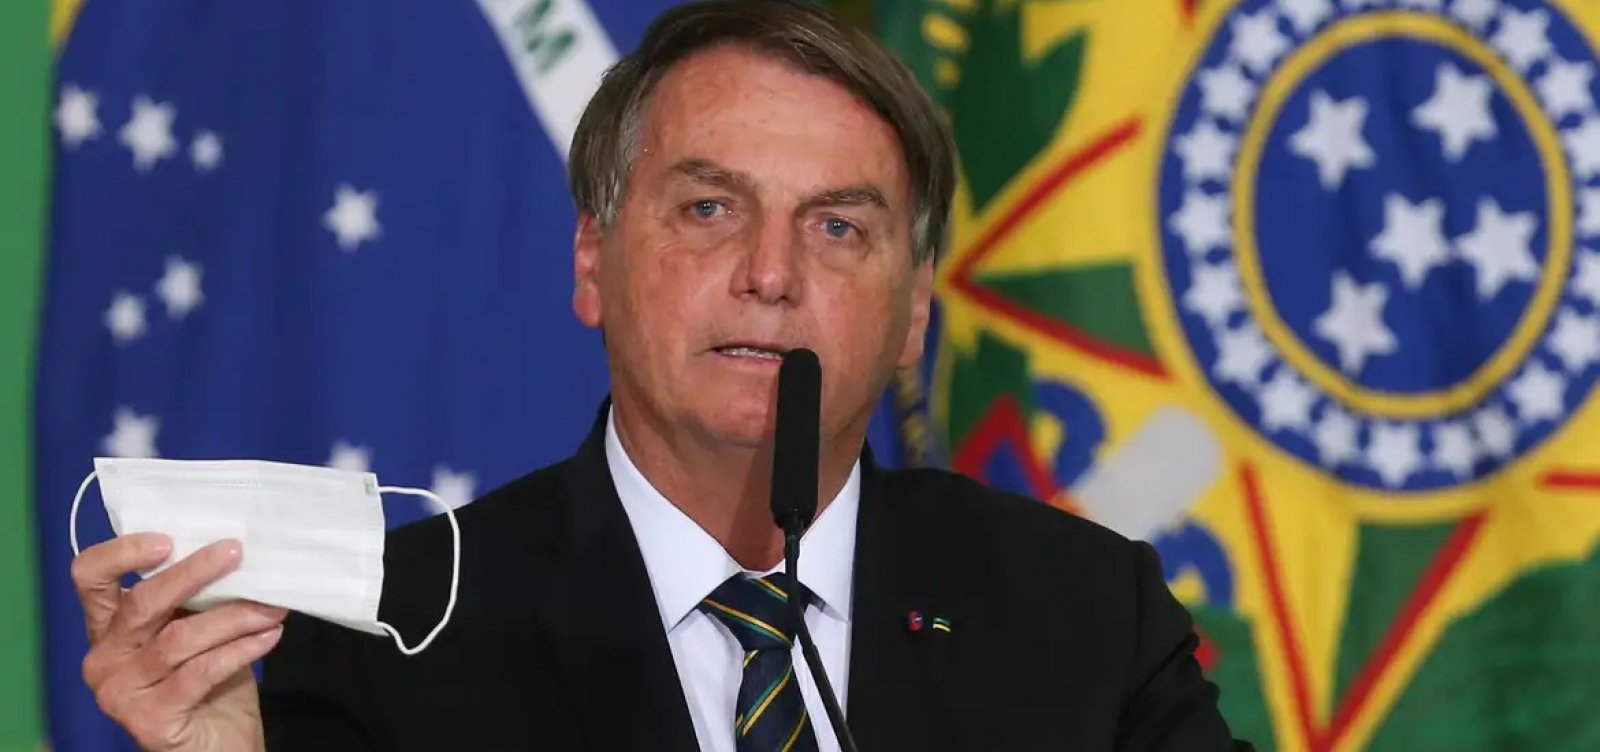 Cidades em que Bolsonaro teve mais votos tiveram mais mortes por covid-19, aponta pesquisa